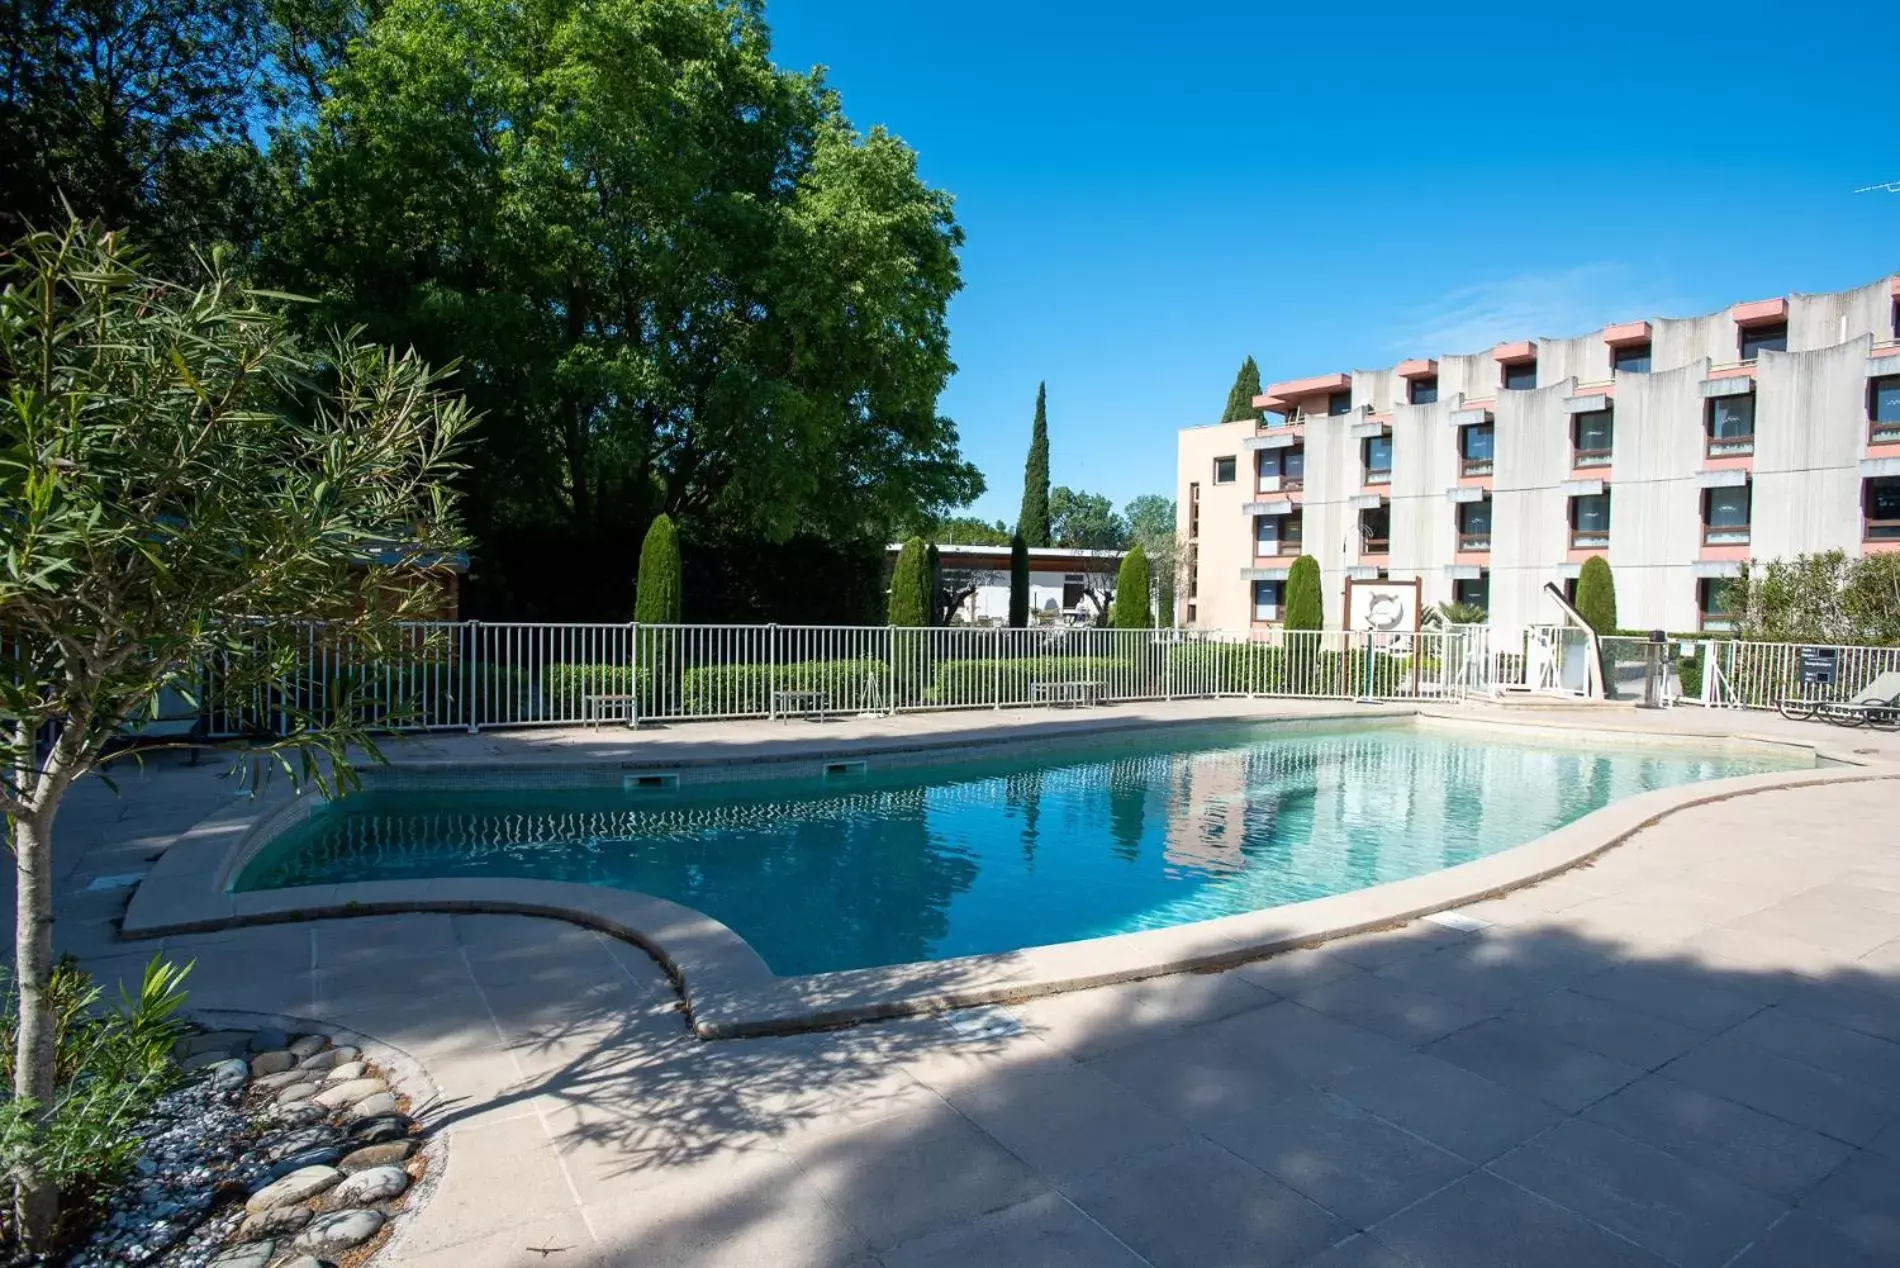 Swimming Pool in Novotel Aix-en-Provence Pont de L'Arc